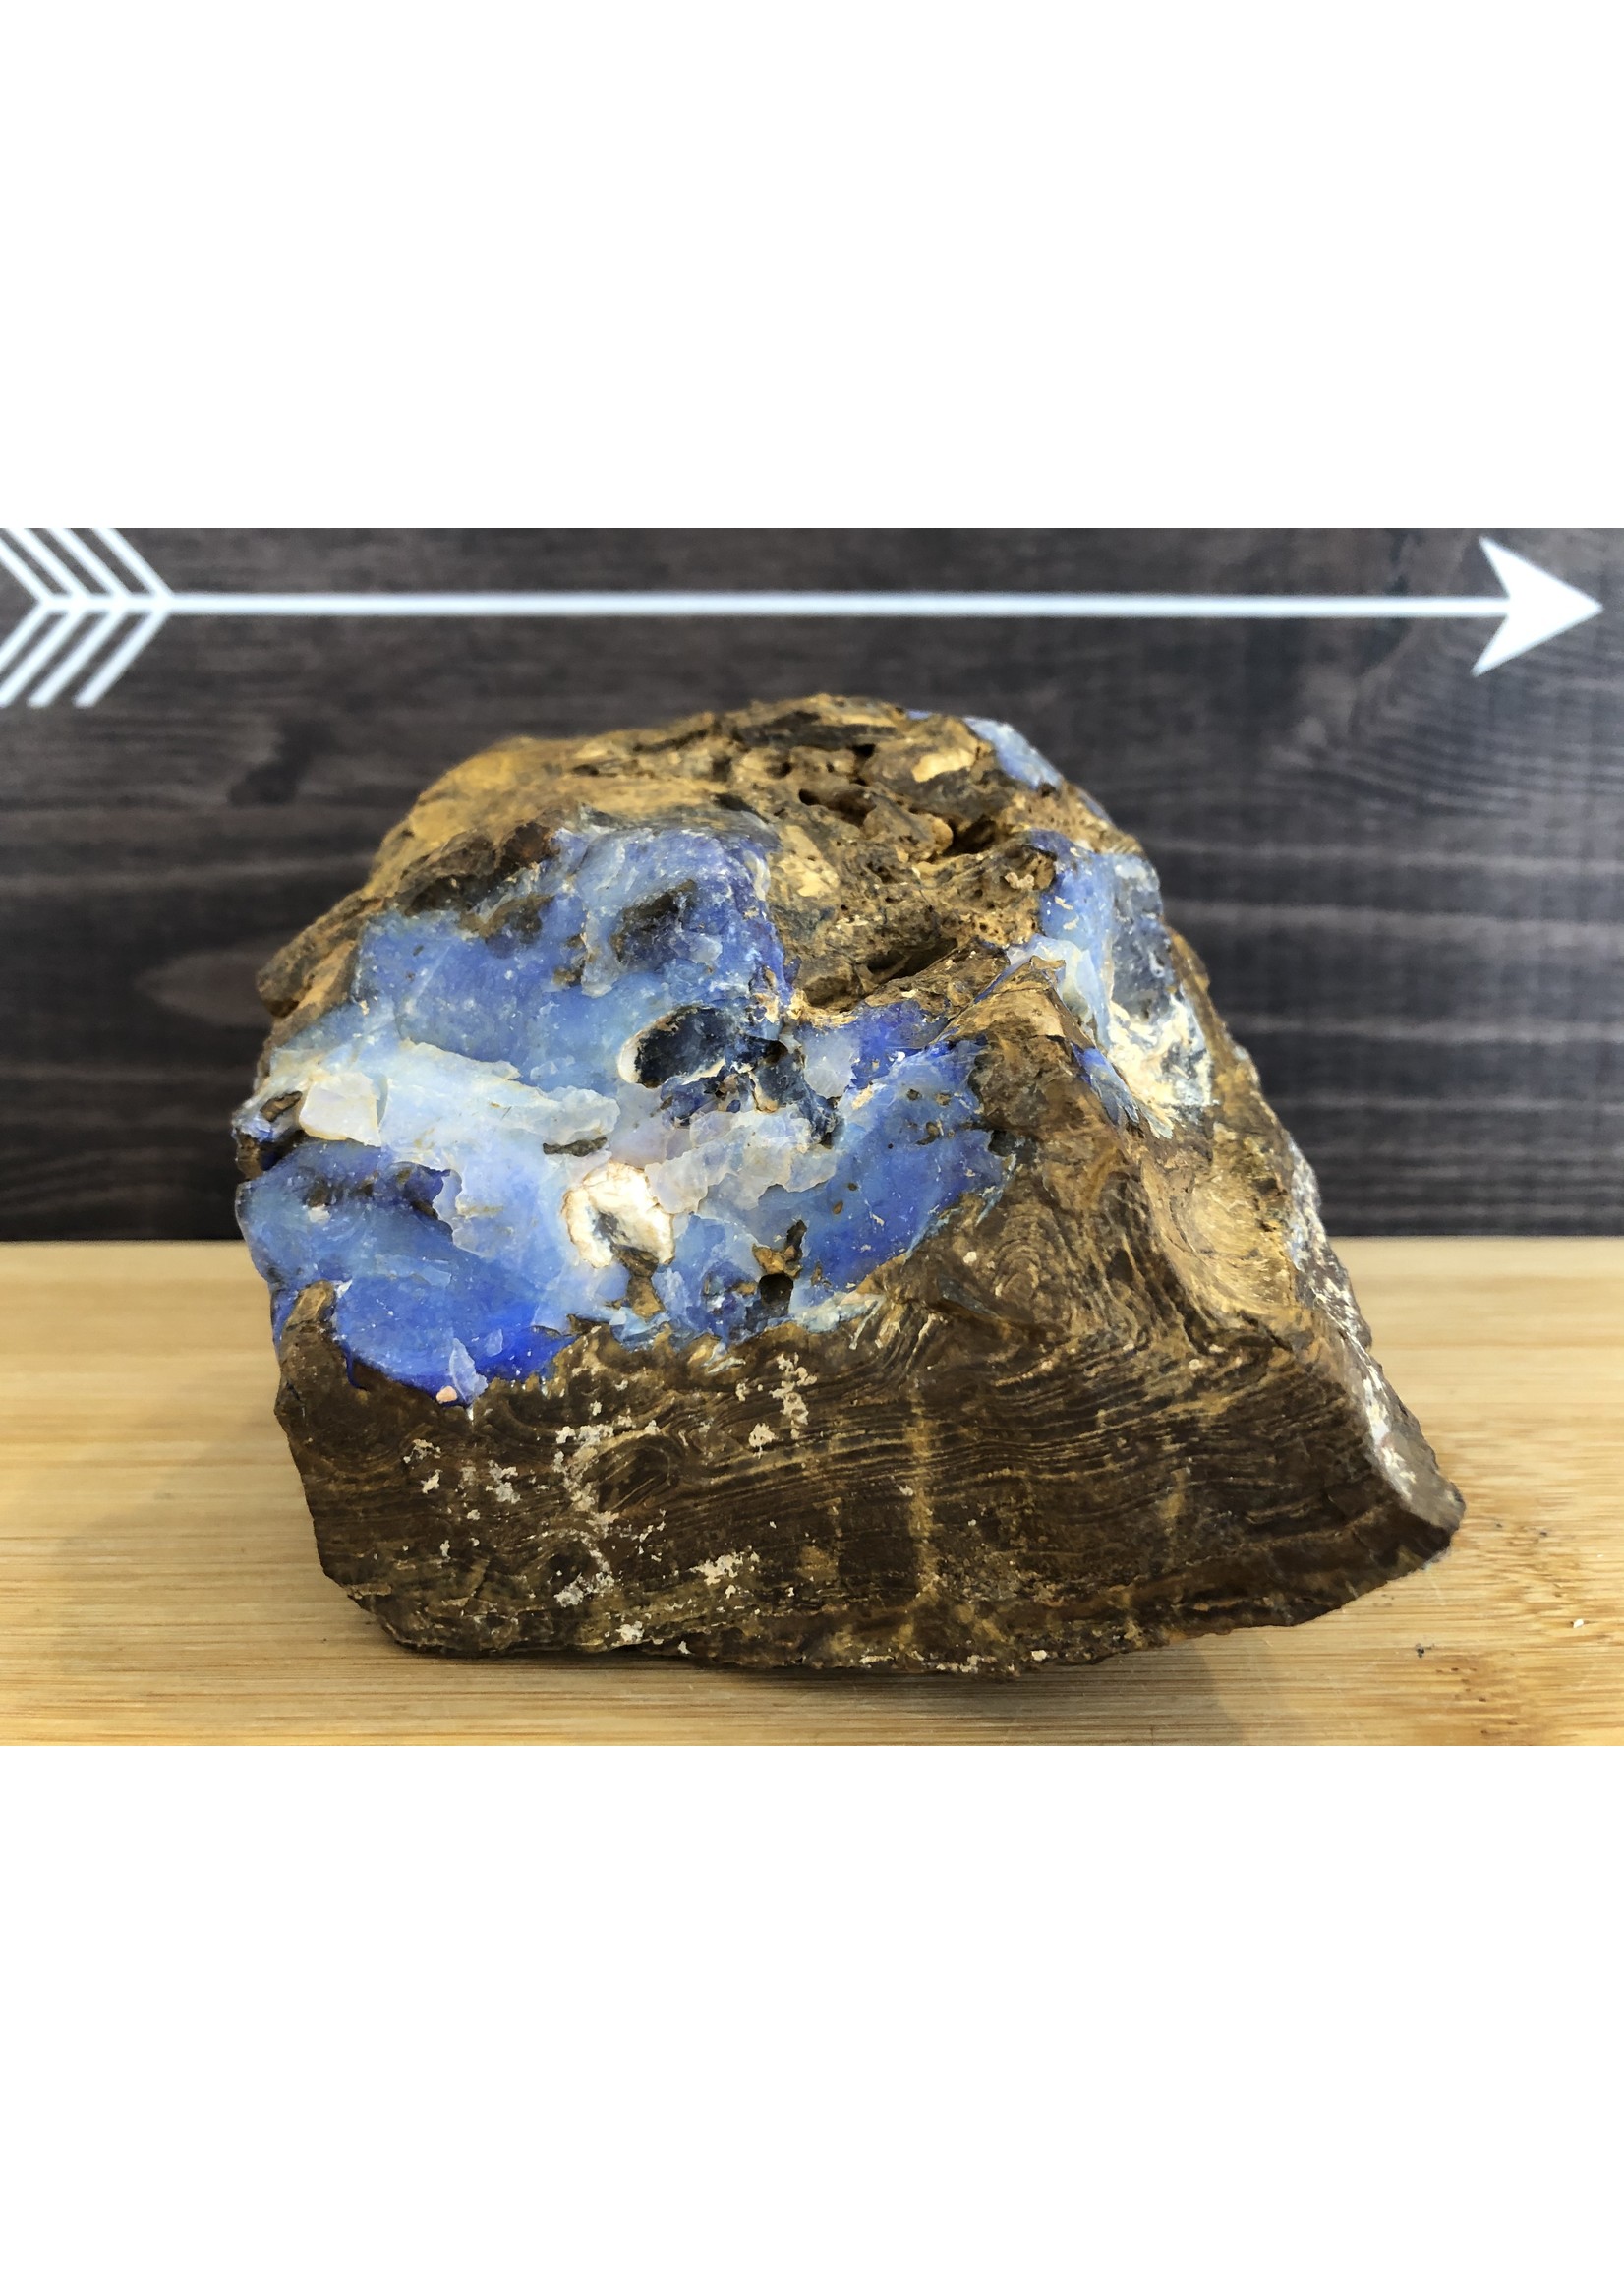 opale boulder rough-all surfaces